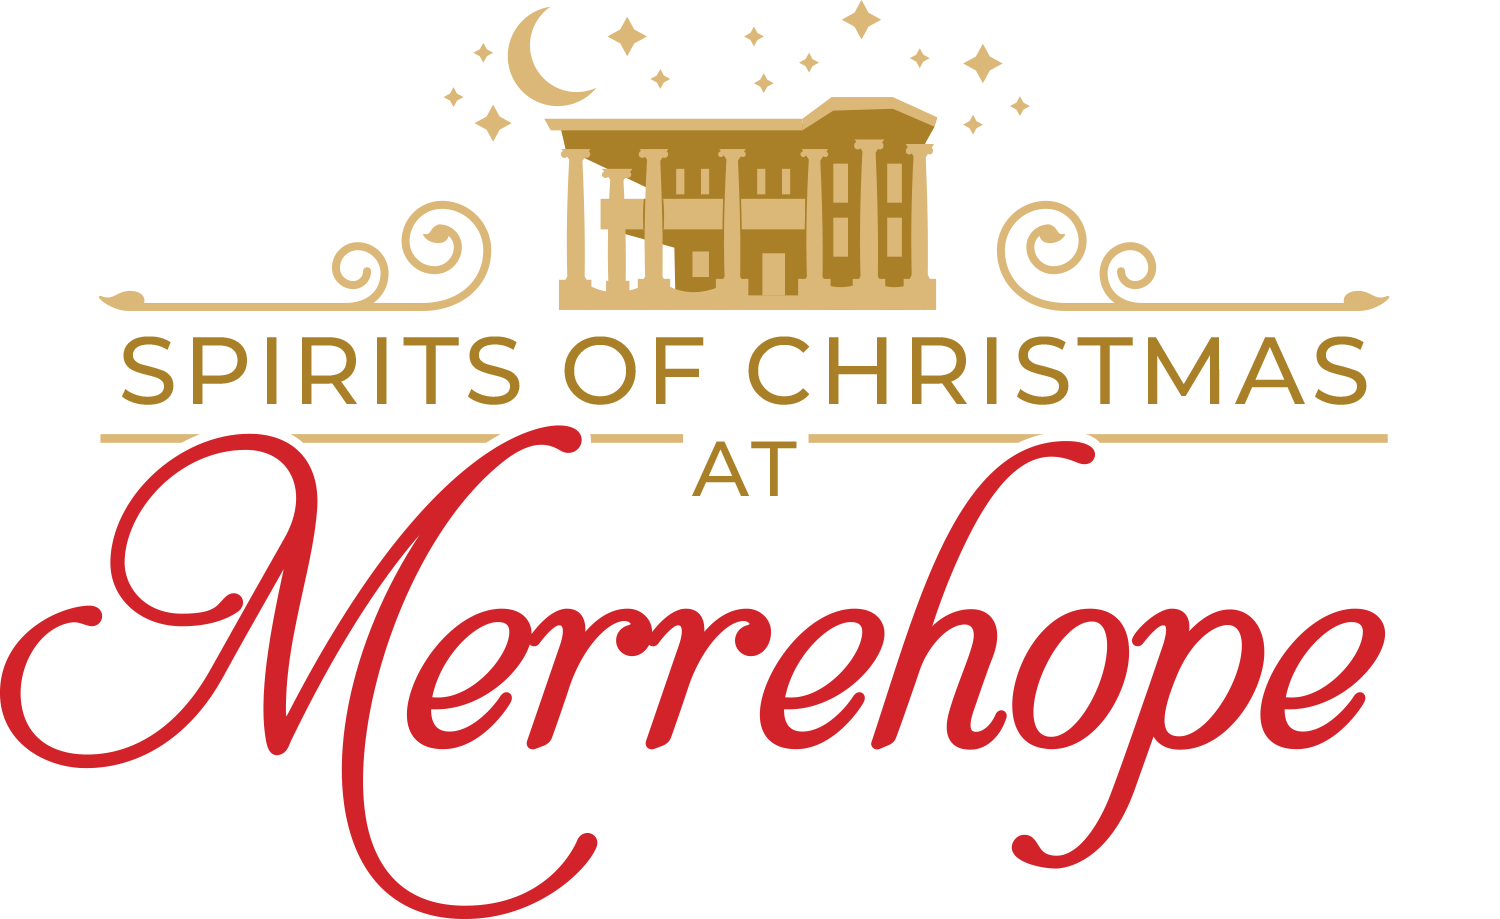 Merrehope's Spirits of Christmas logo